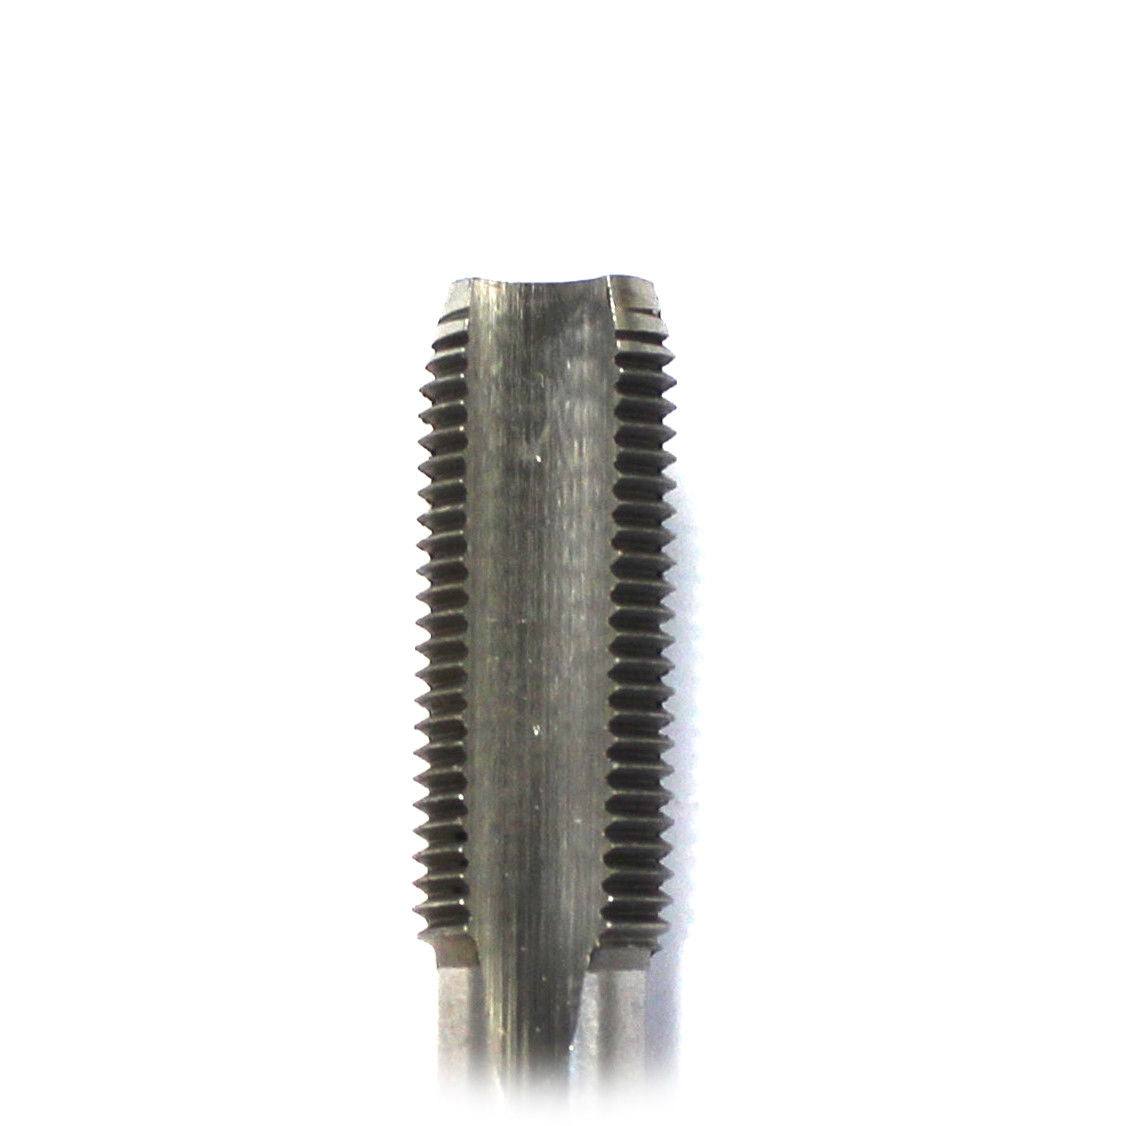 Tungsten Steel Hand Tap M10 x 1.0, Taper & Plug. Metric Pitch Drilling Tool - TDRMOTO